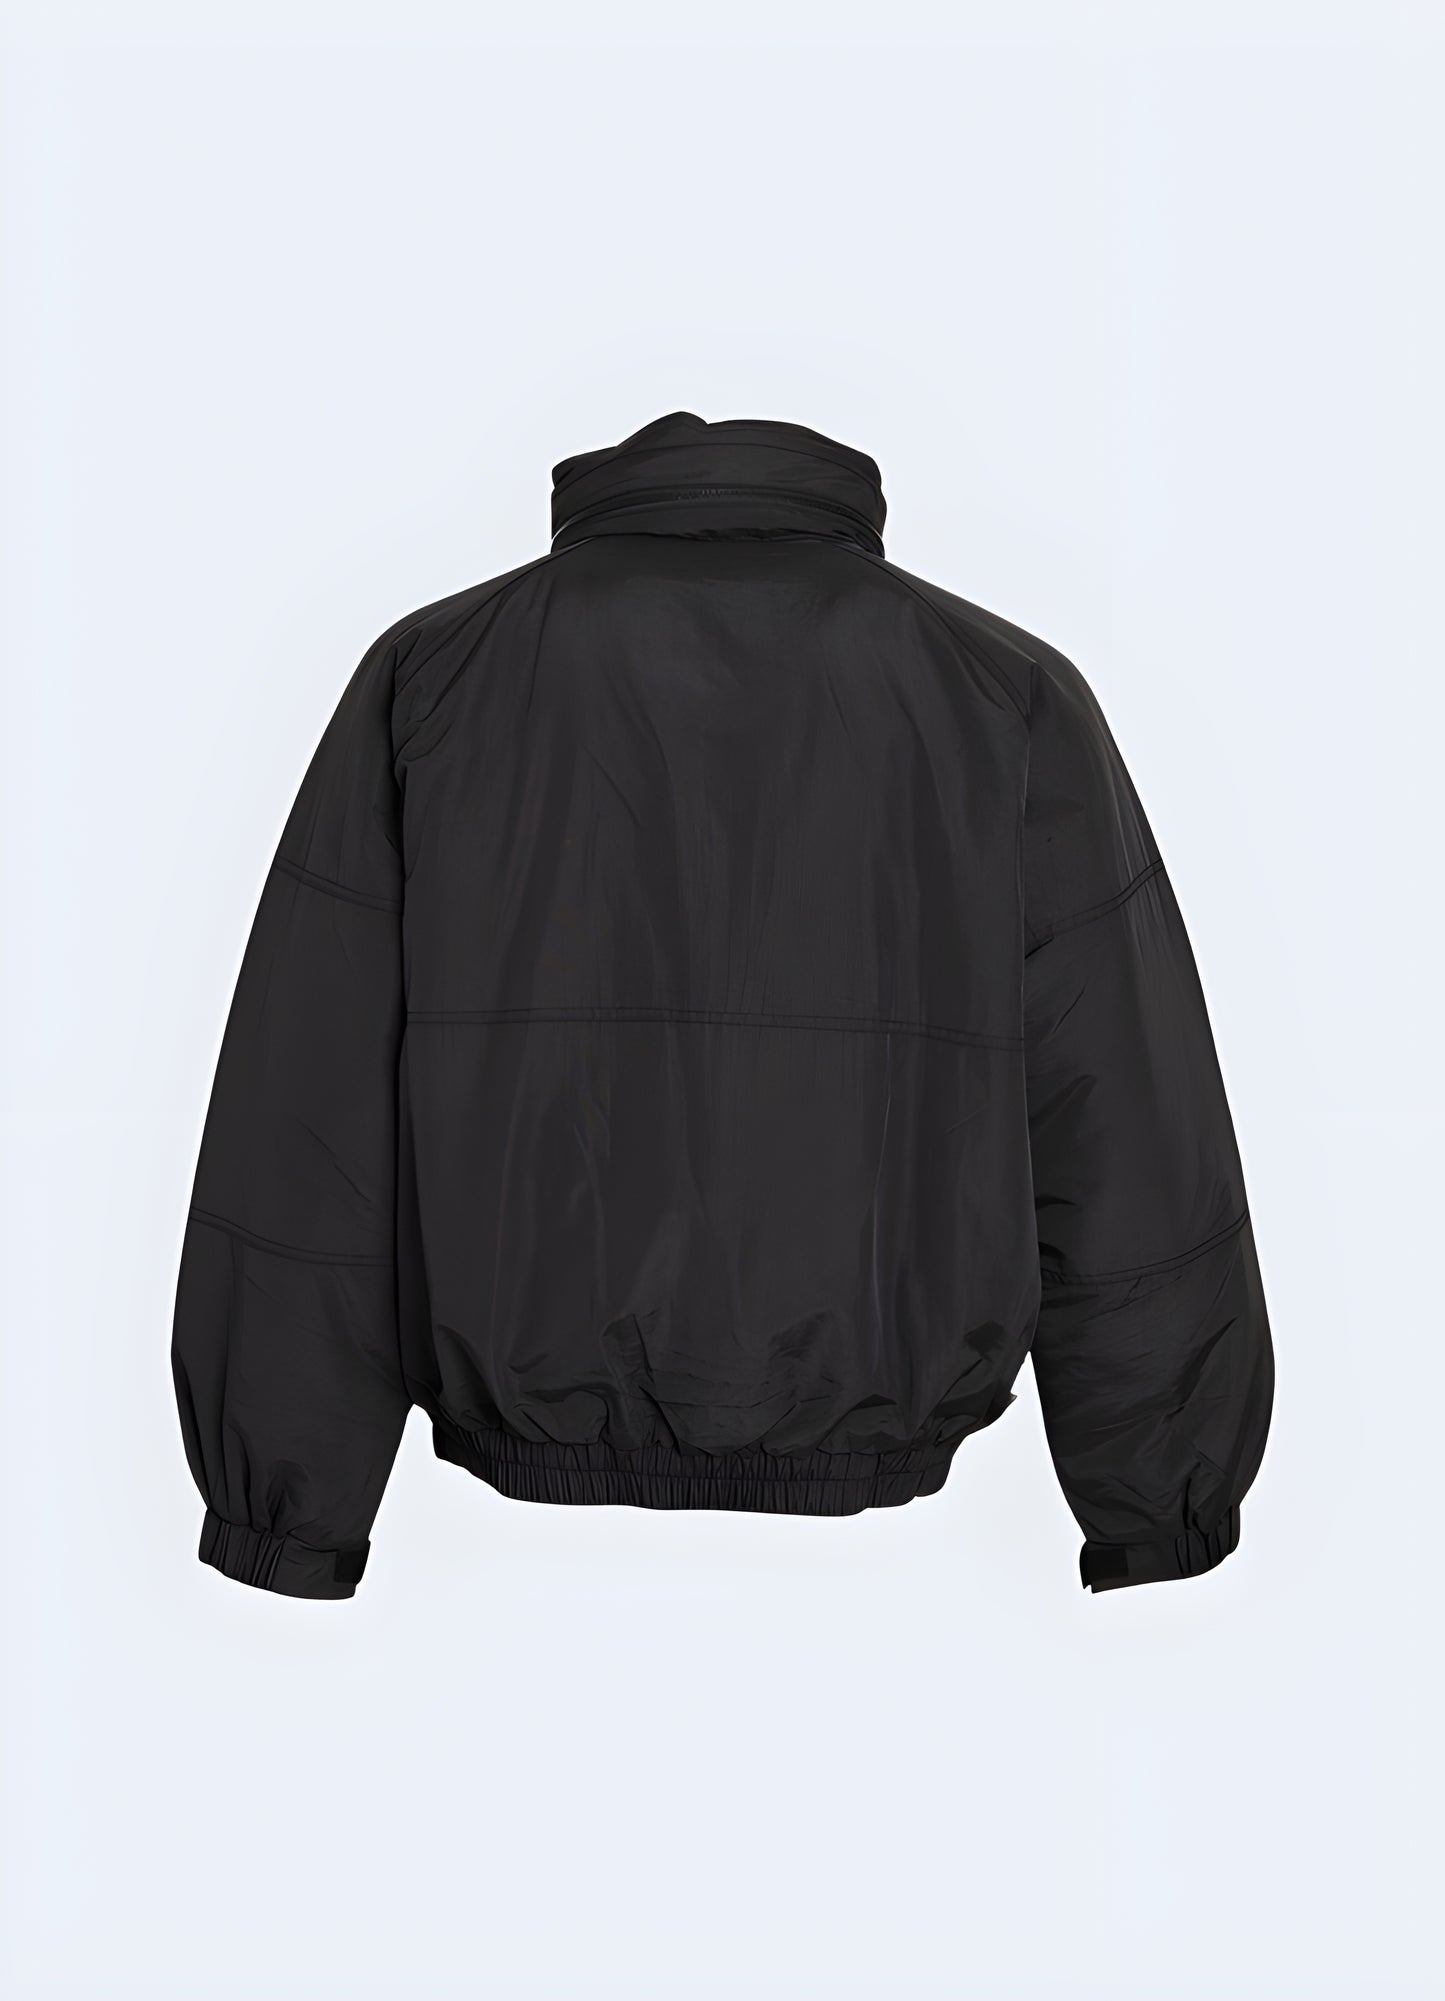 Versatile black utility jacket with epaulets.